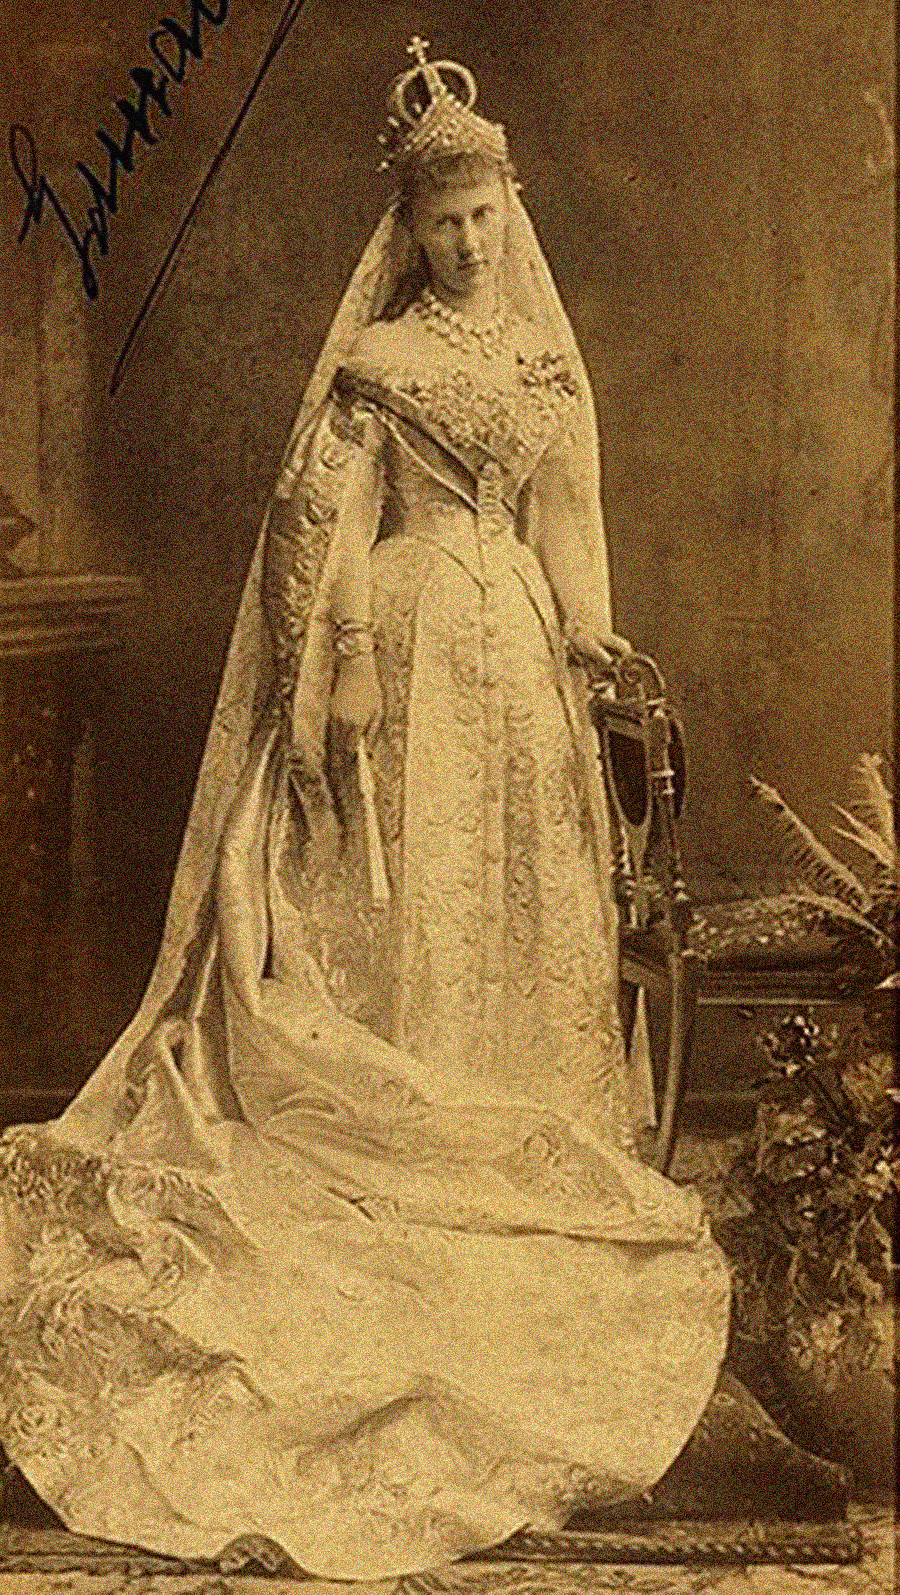 Grã-duquesa Isabel Mavrikievna, neta de Nikolai 1°, com vestido de noiva, 1884.